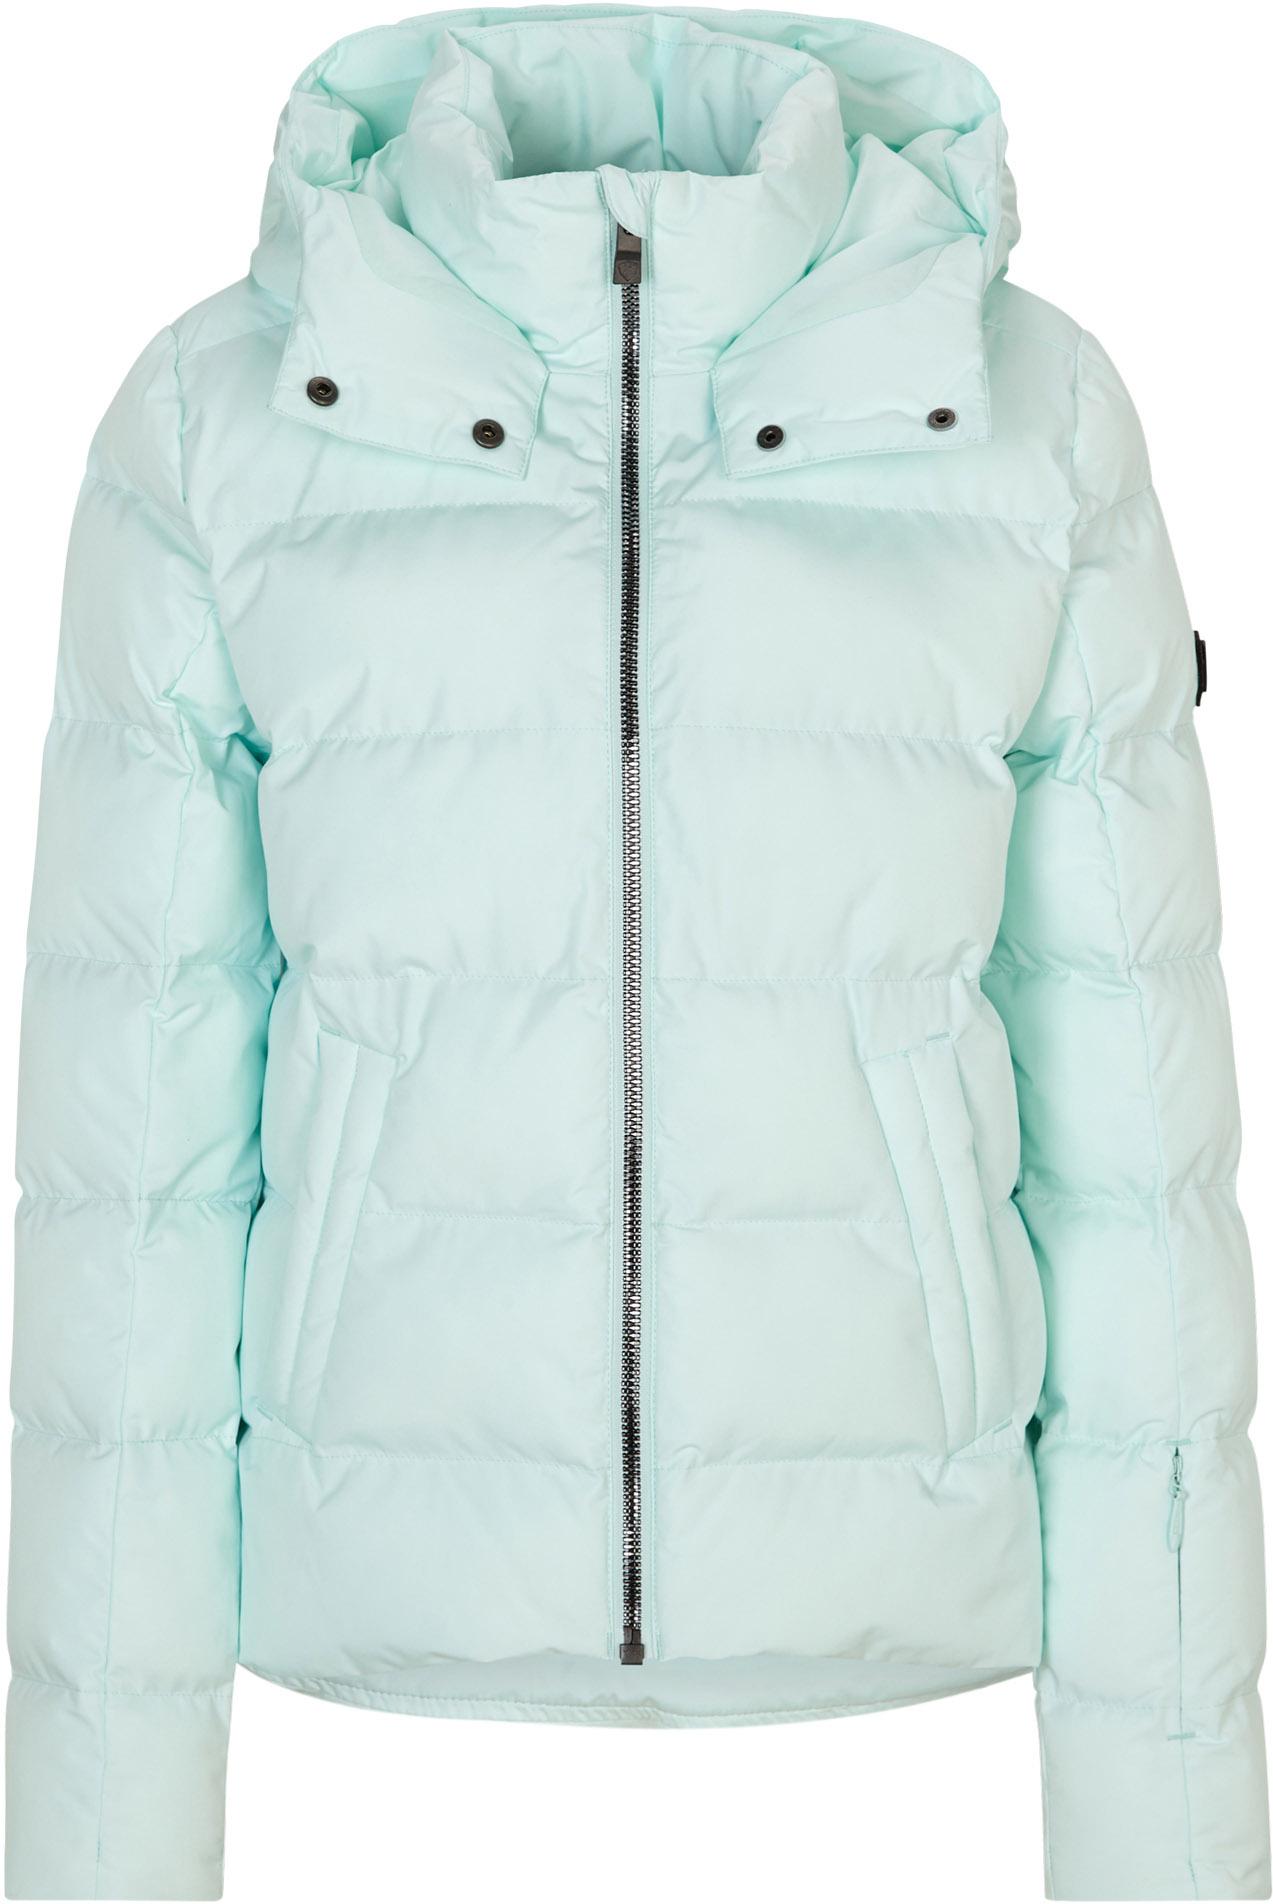 Jacken für Damen von Ziener Online Shop kaufen im von in SportScheck blau